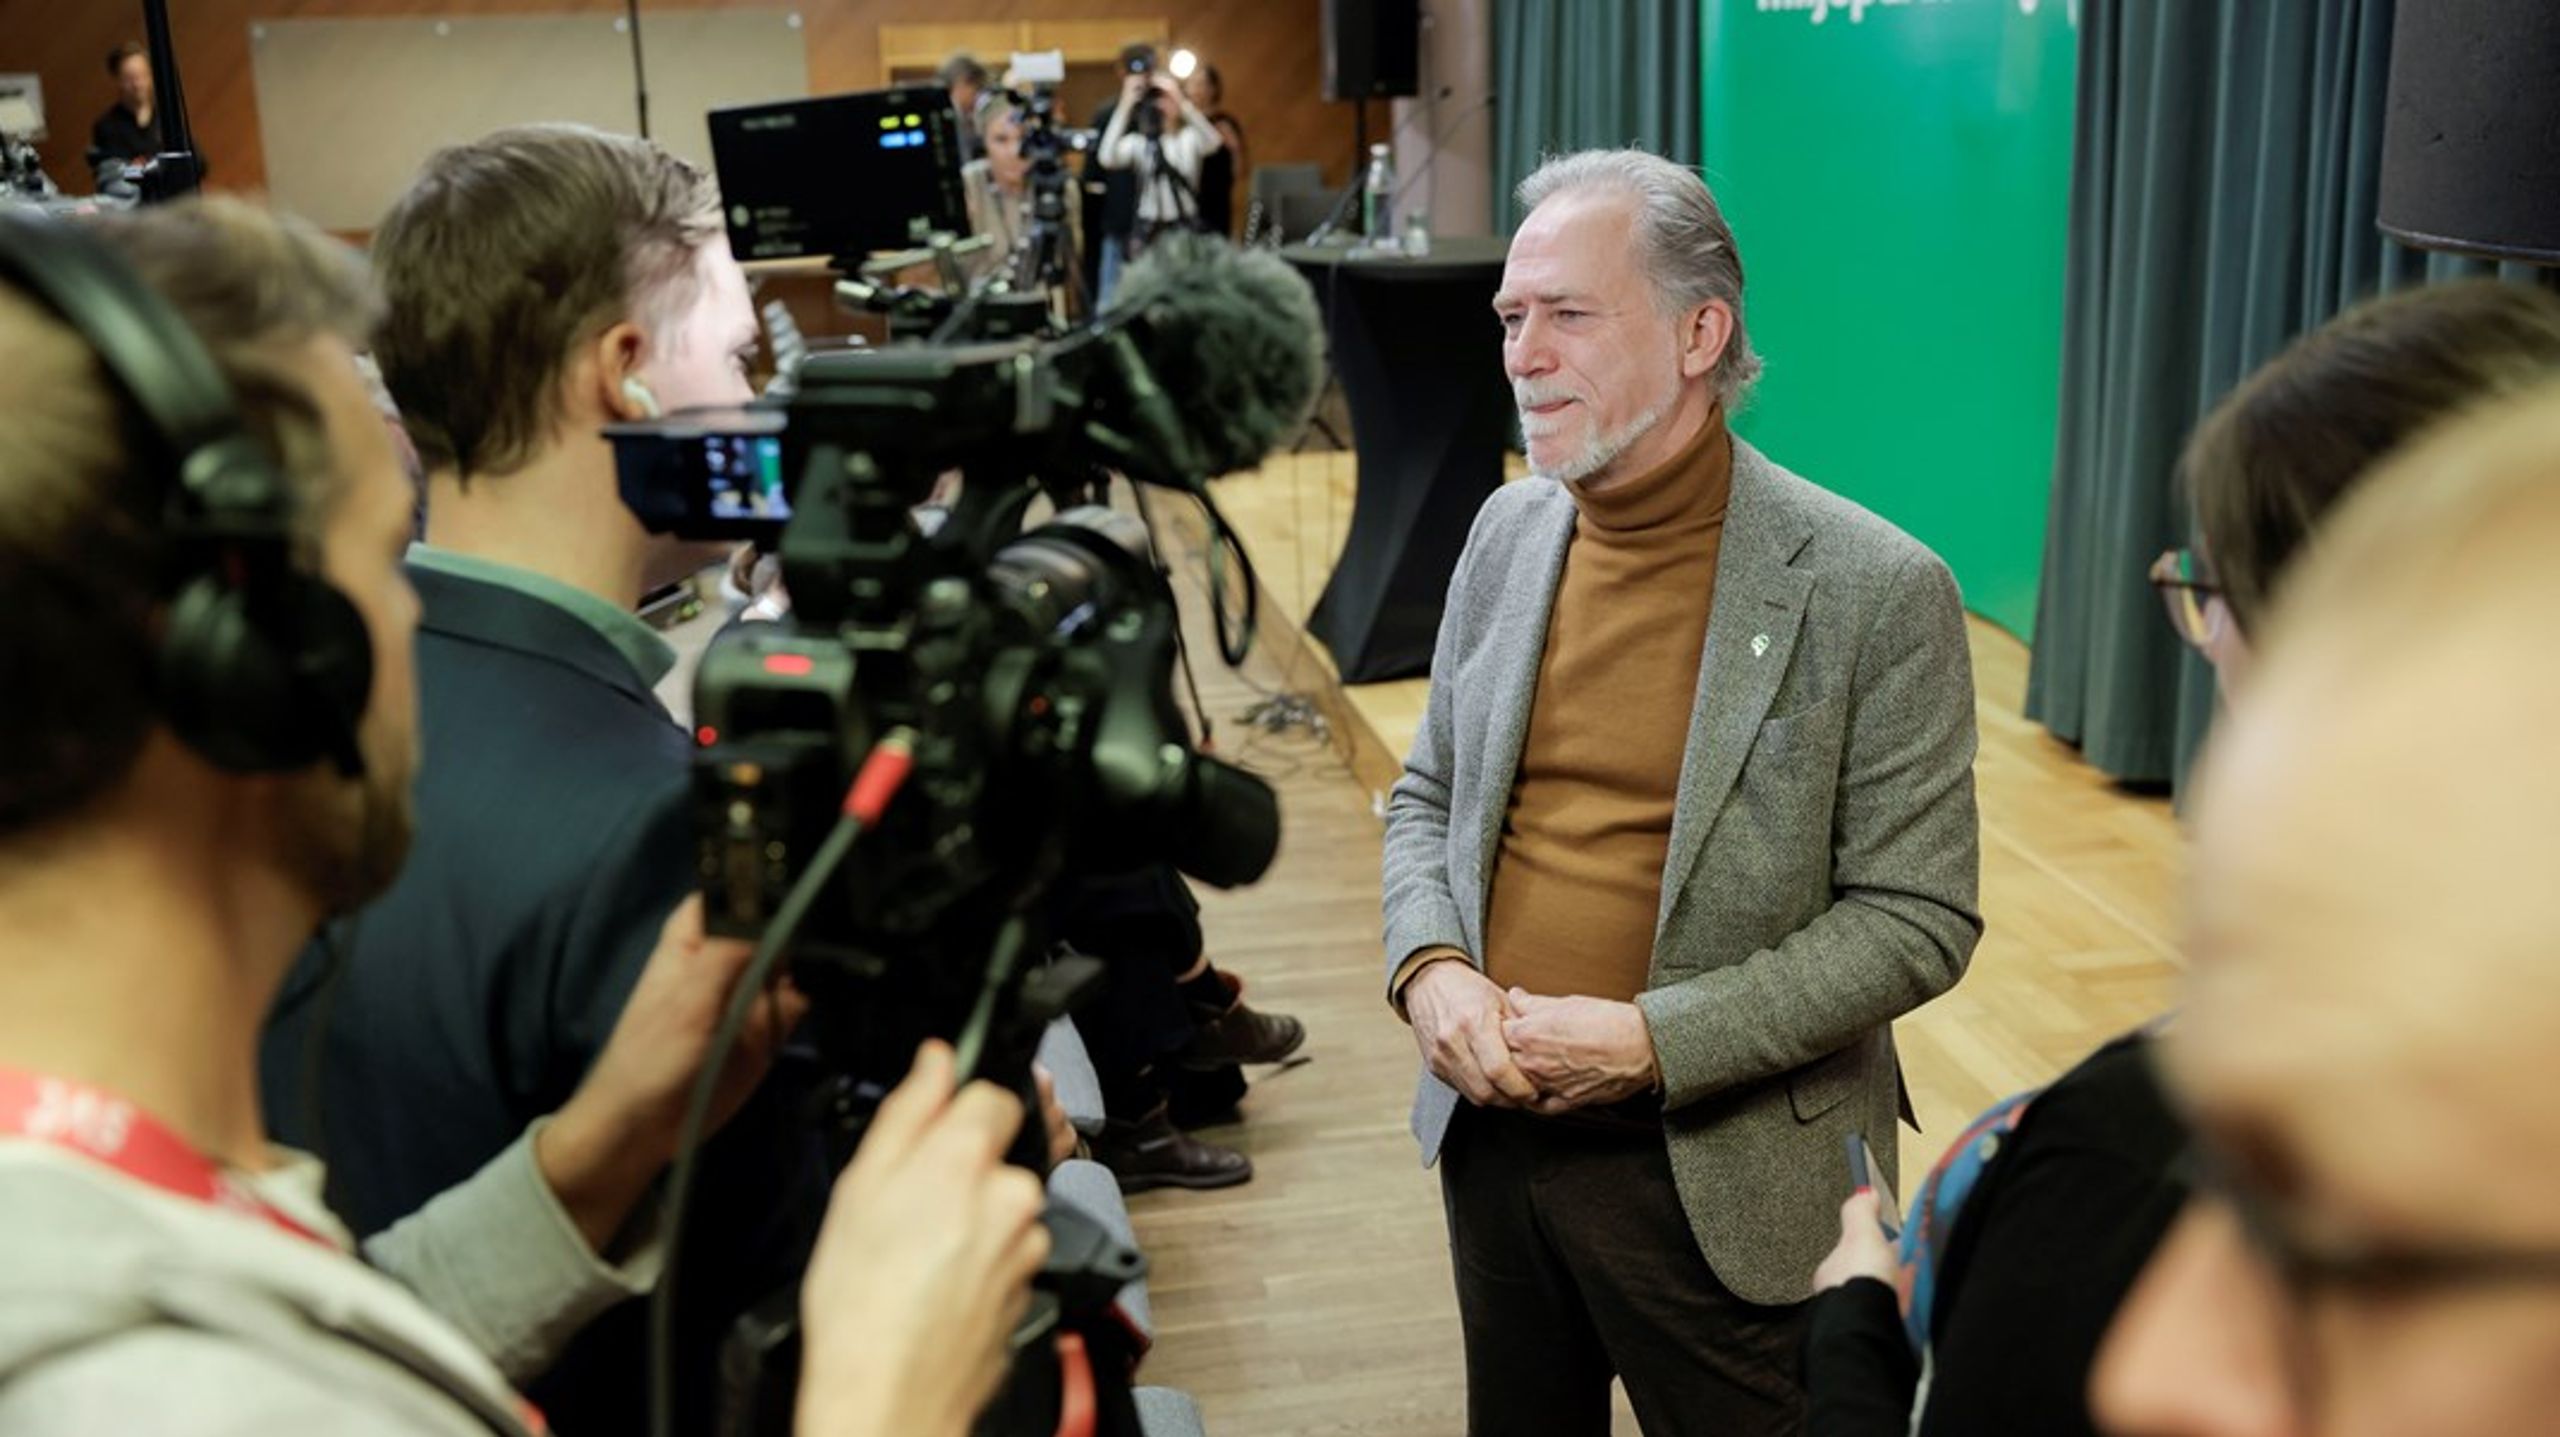 Om man är ett parti och en politiker så ska man sträva efter makten för att man vill förändra, säger Daniel Helldén som på lördagen valdes till Miljöpartiets nya språkrör.